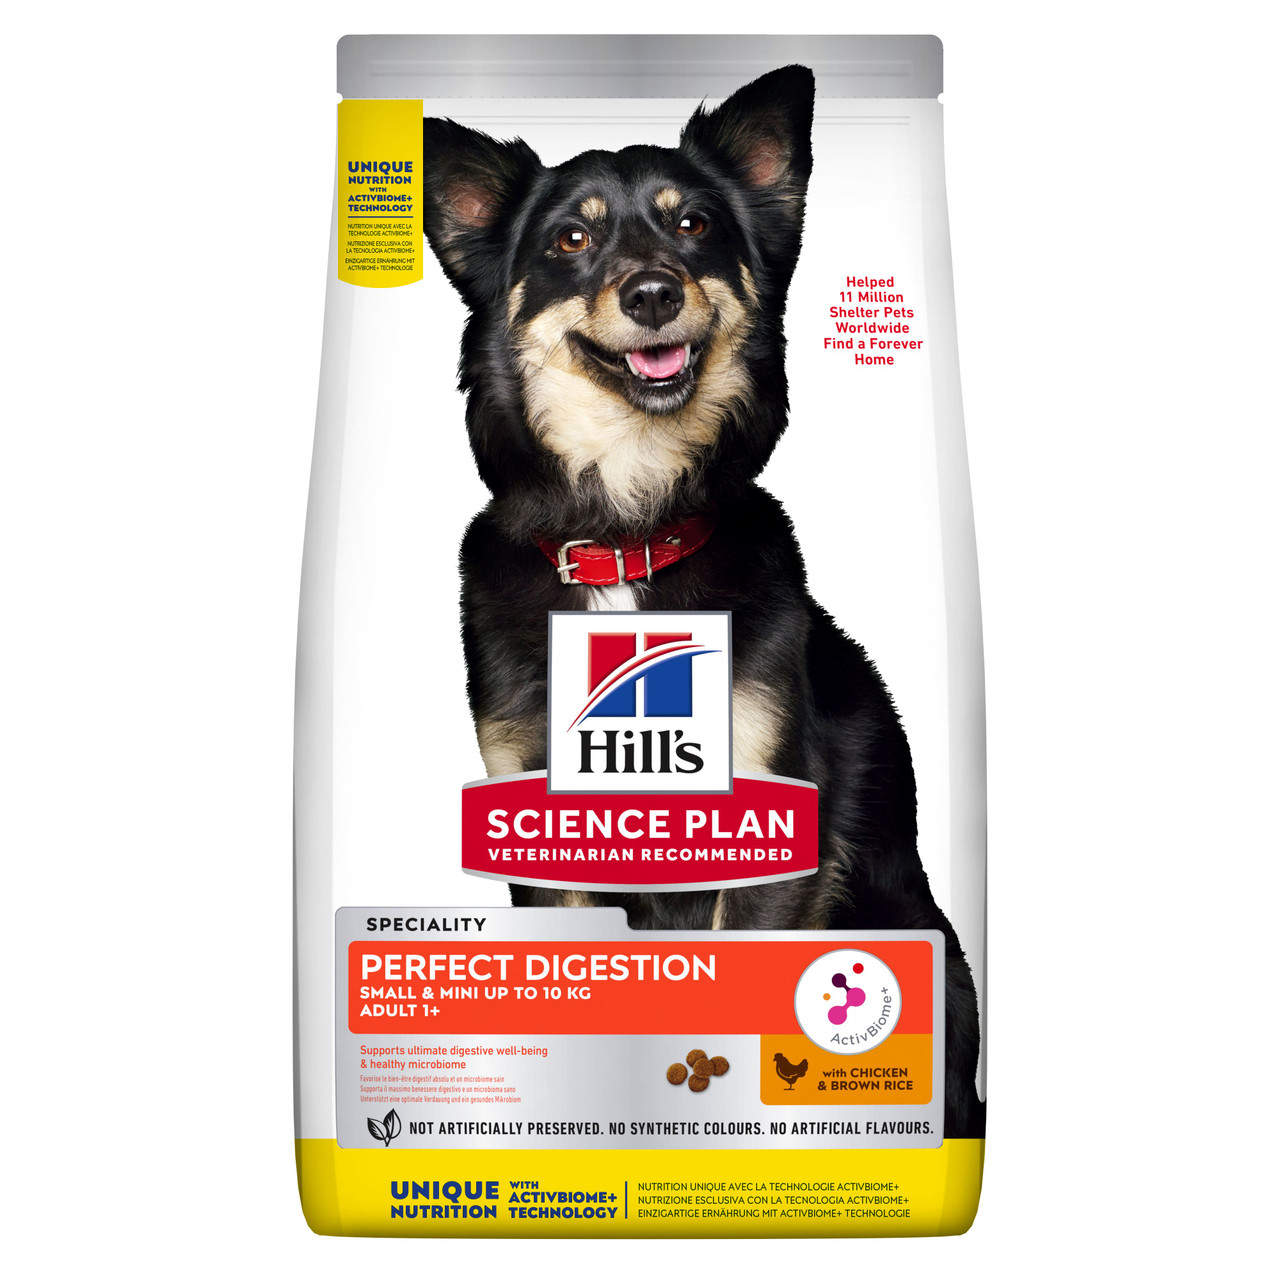 Perfect Digestion Small & Mini Adult Hundfoder – 6 kg